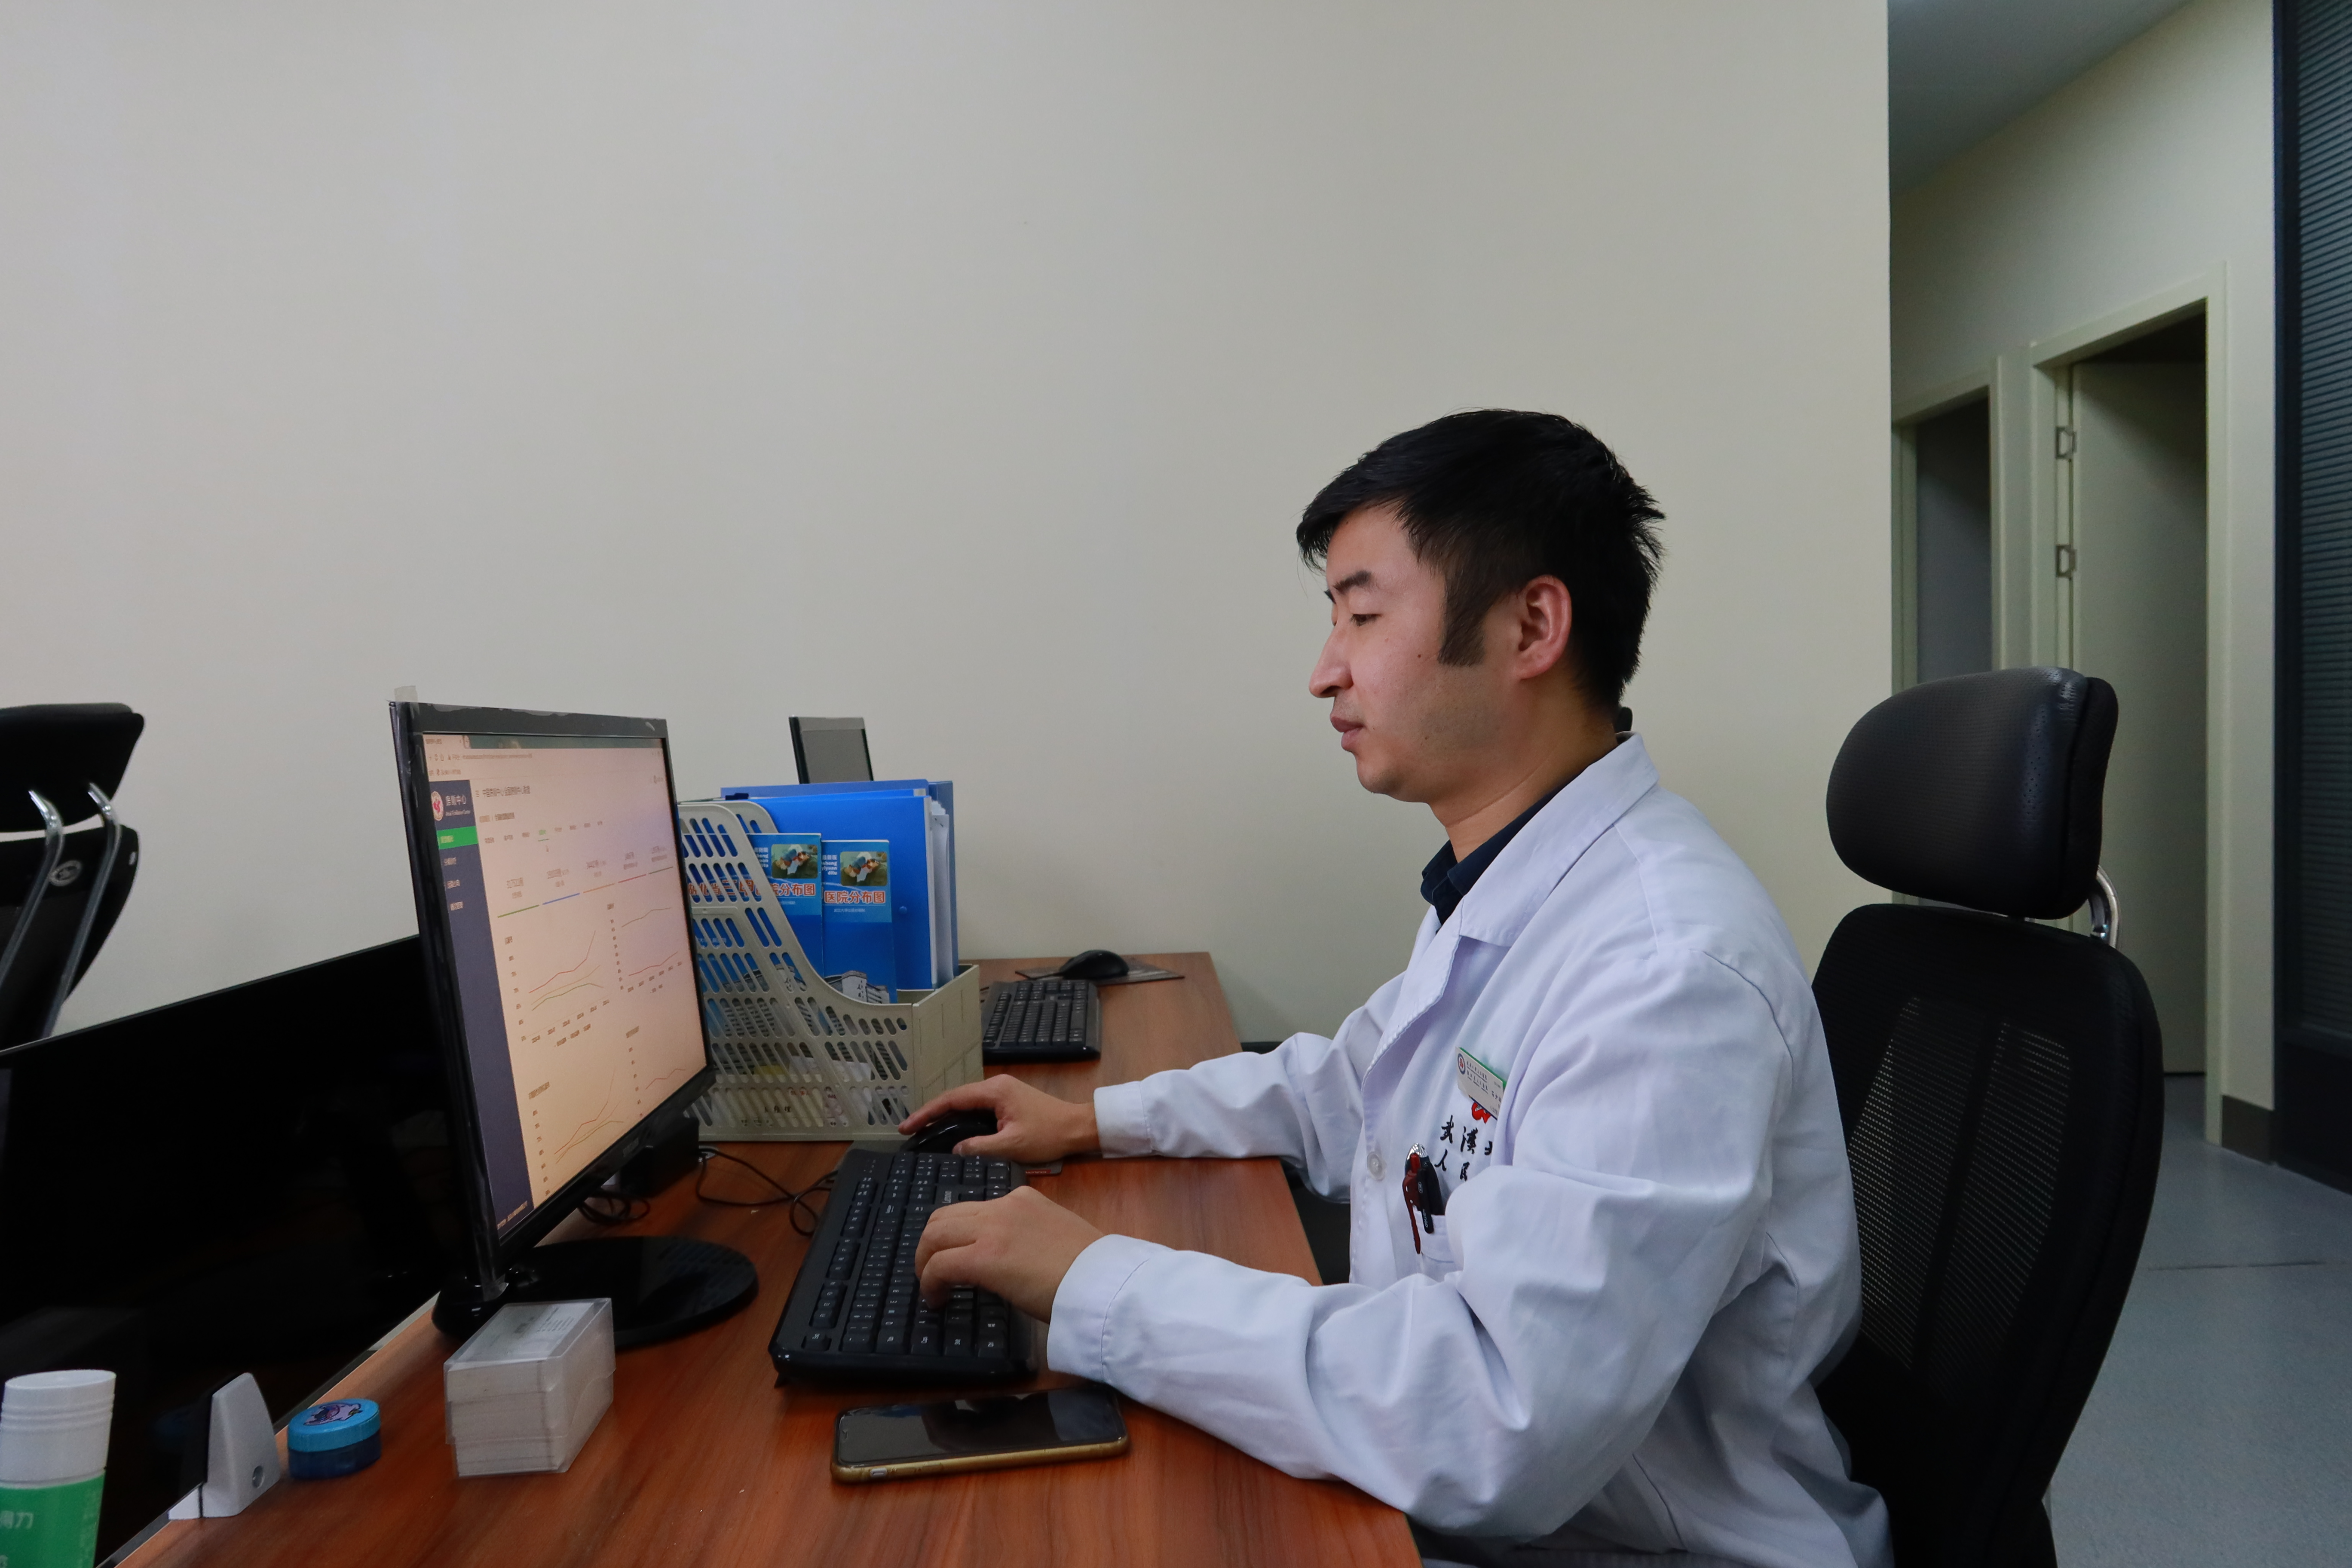 湖北省人民医院铺设“佩戴式”心电监护预警网造福心血管病患